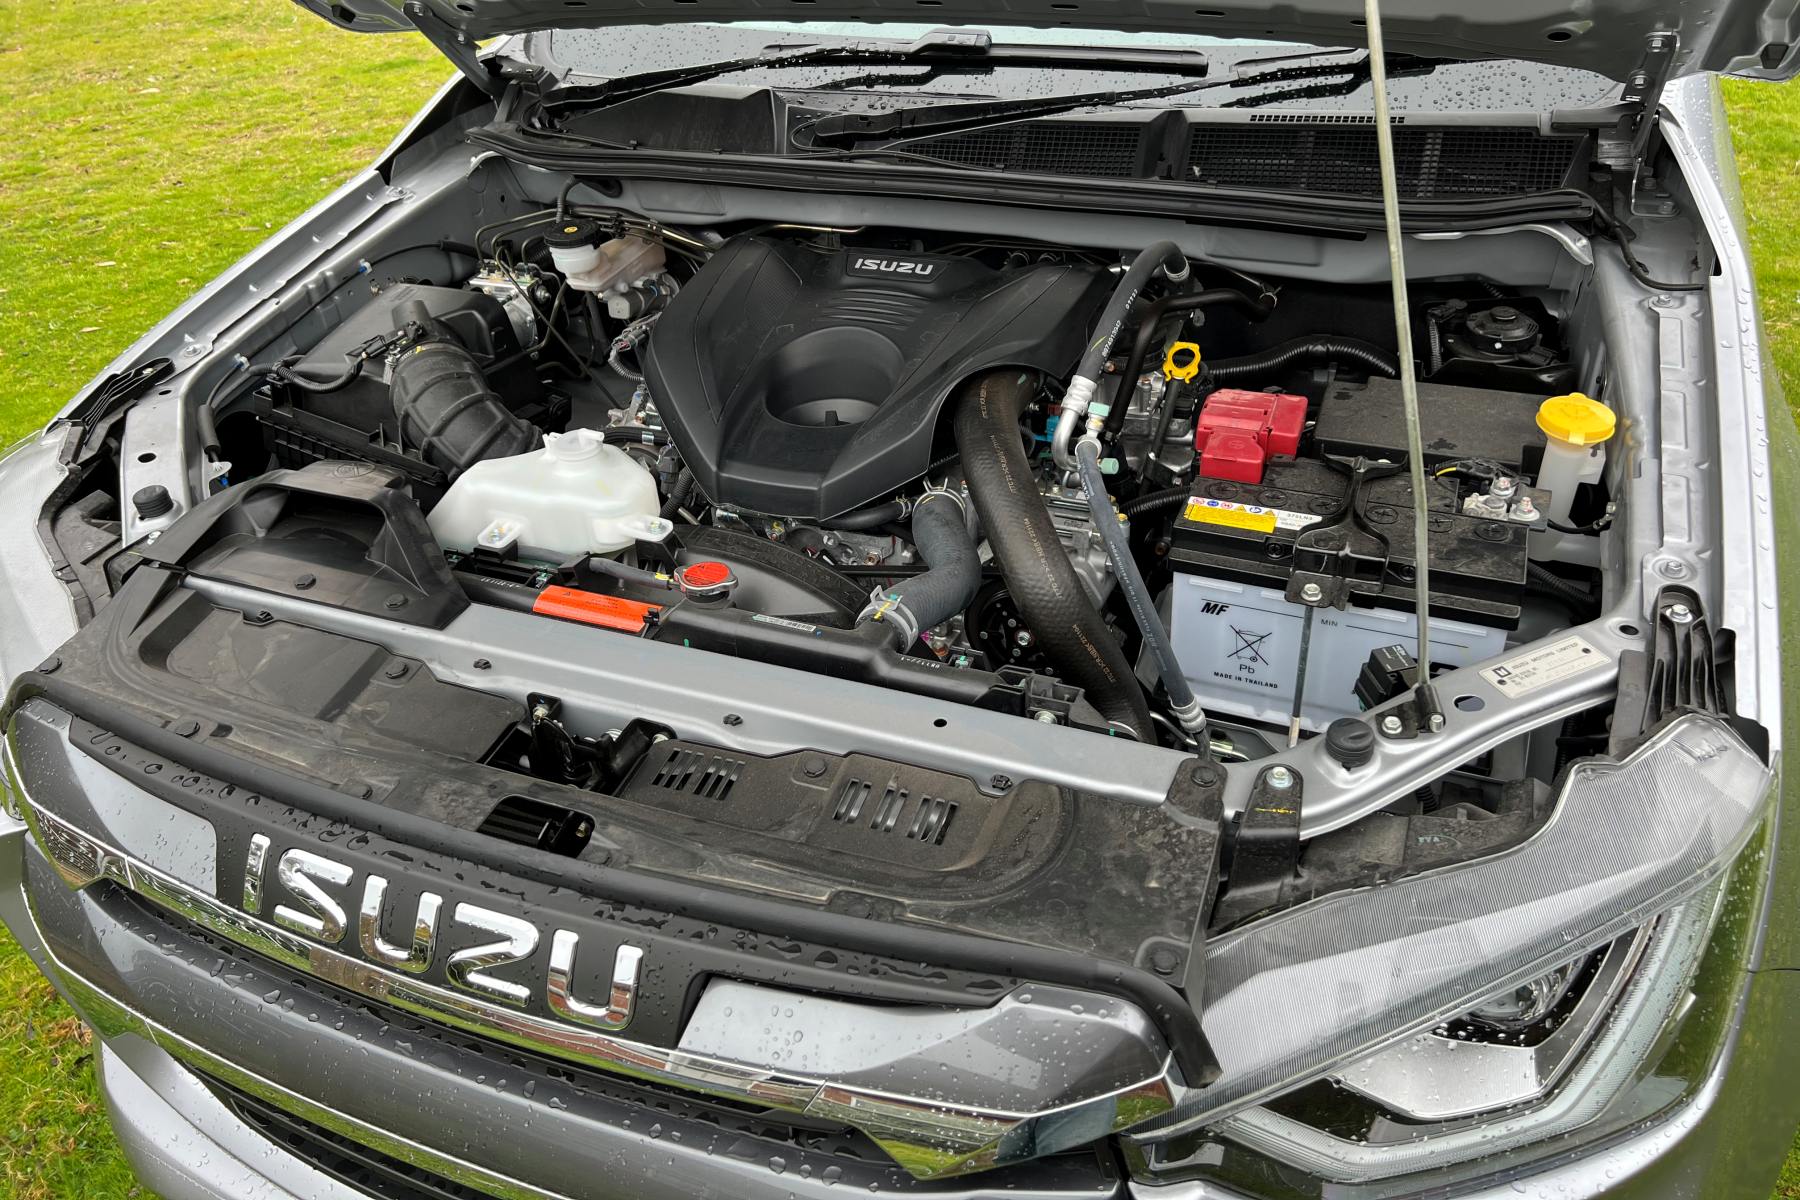 Isuzu D-Max LS-U Dual Cab Trayback 4WD Ute at farm engine